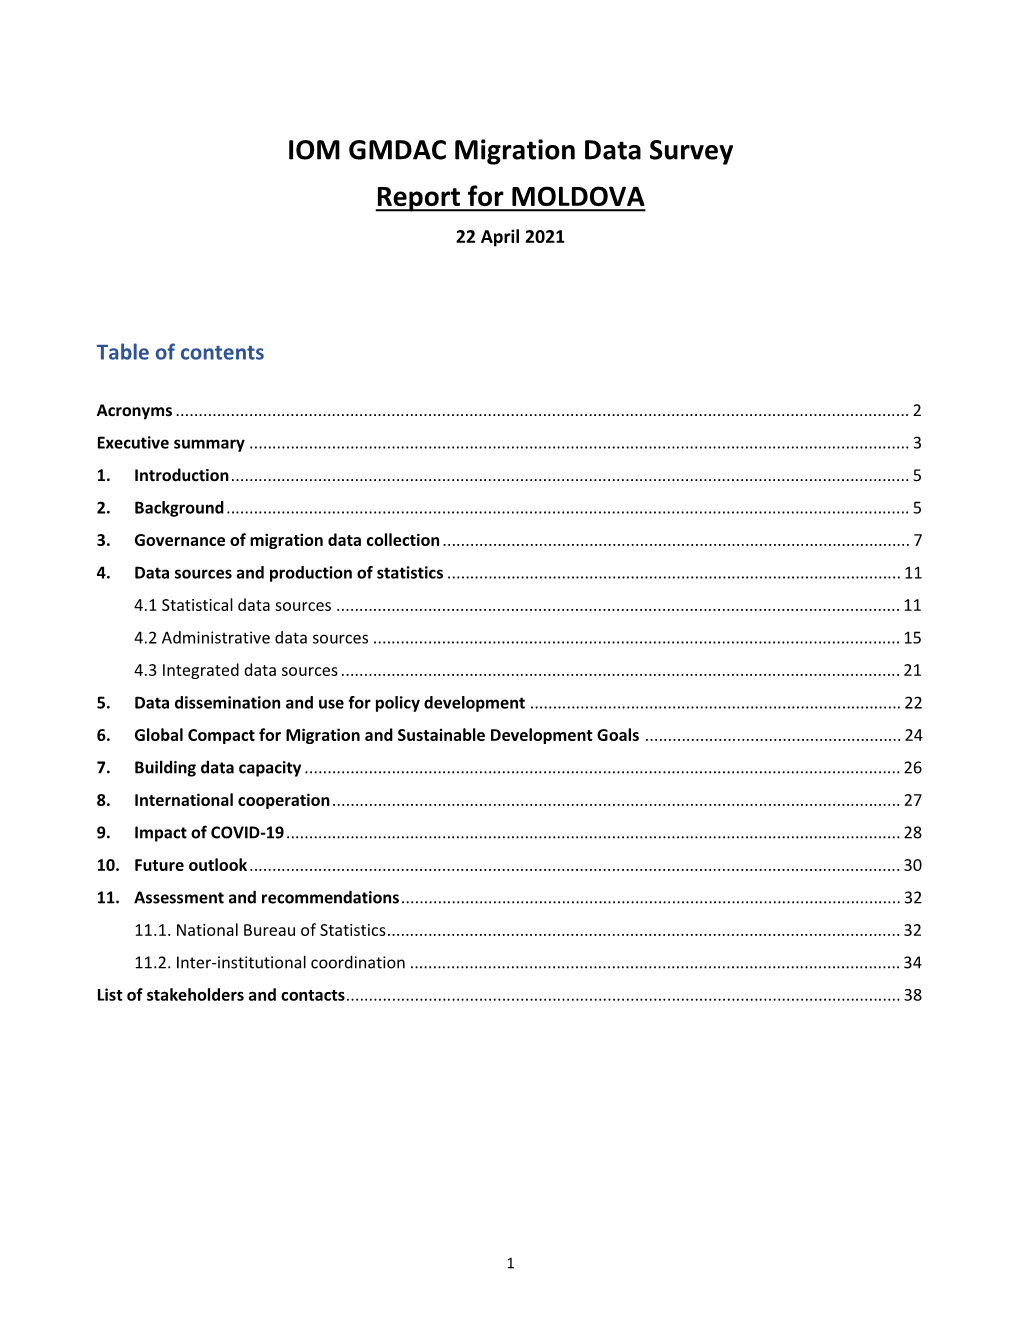 IOM GMDAC Migration Data Survey Report for MOLDOVA 22 April 2021